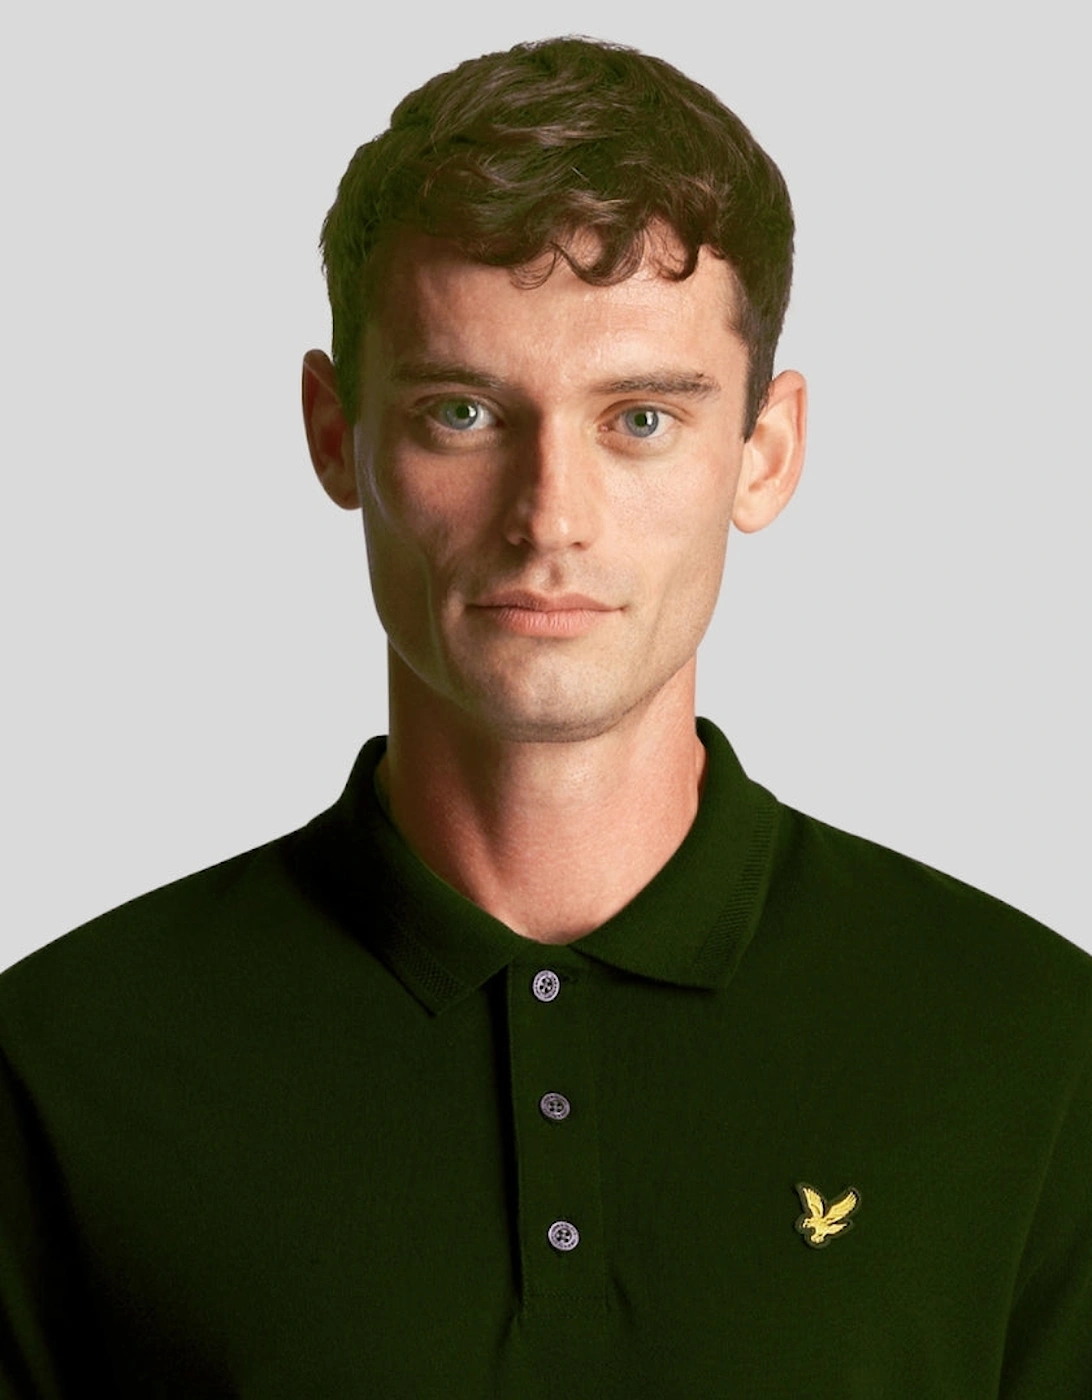 Lyle & Scott Textured Tipped Wilton Green Polo Shirt